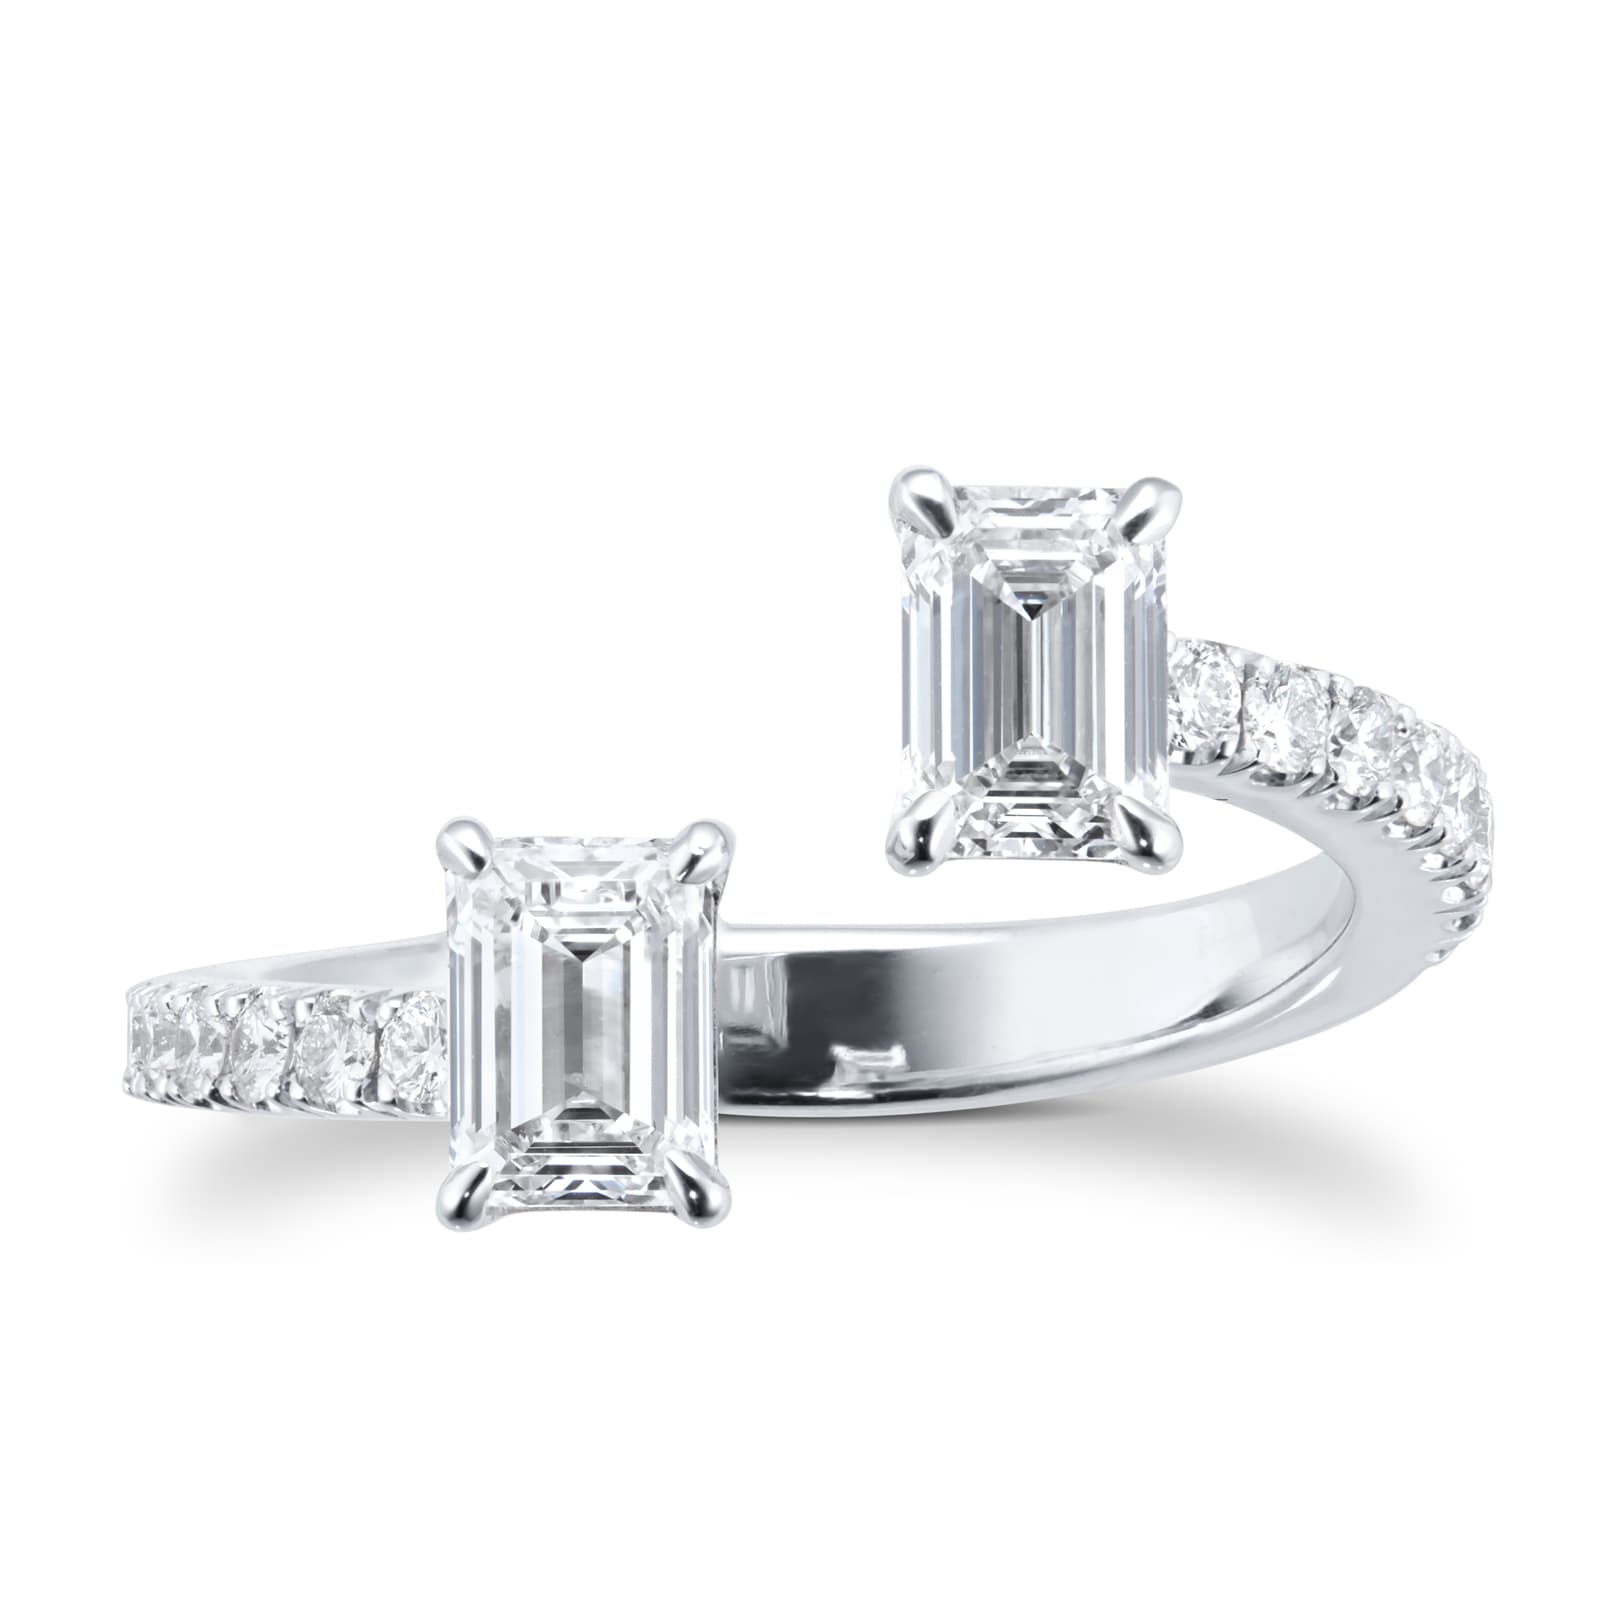 Platinum Tois Et Moi 1.20cttw Emerald Cut Ring With Diamond Set Shoulders - Ring Size L